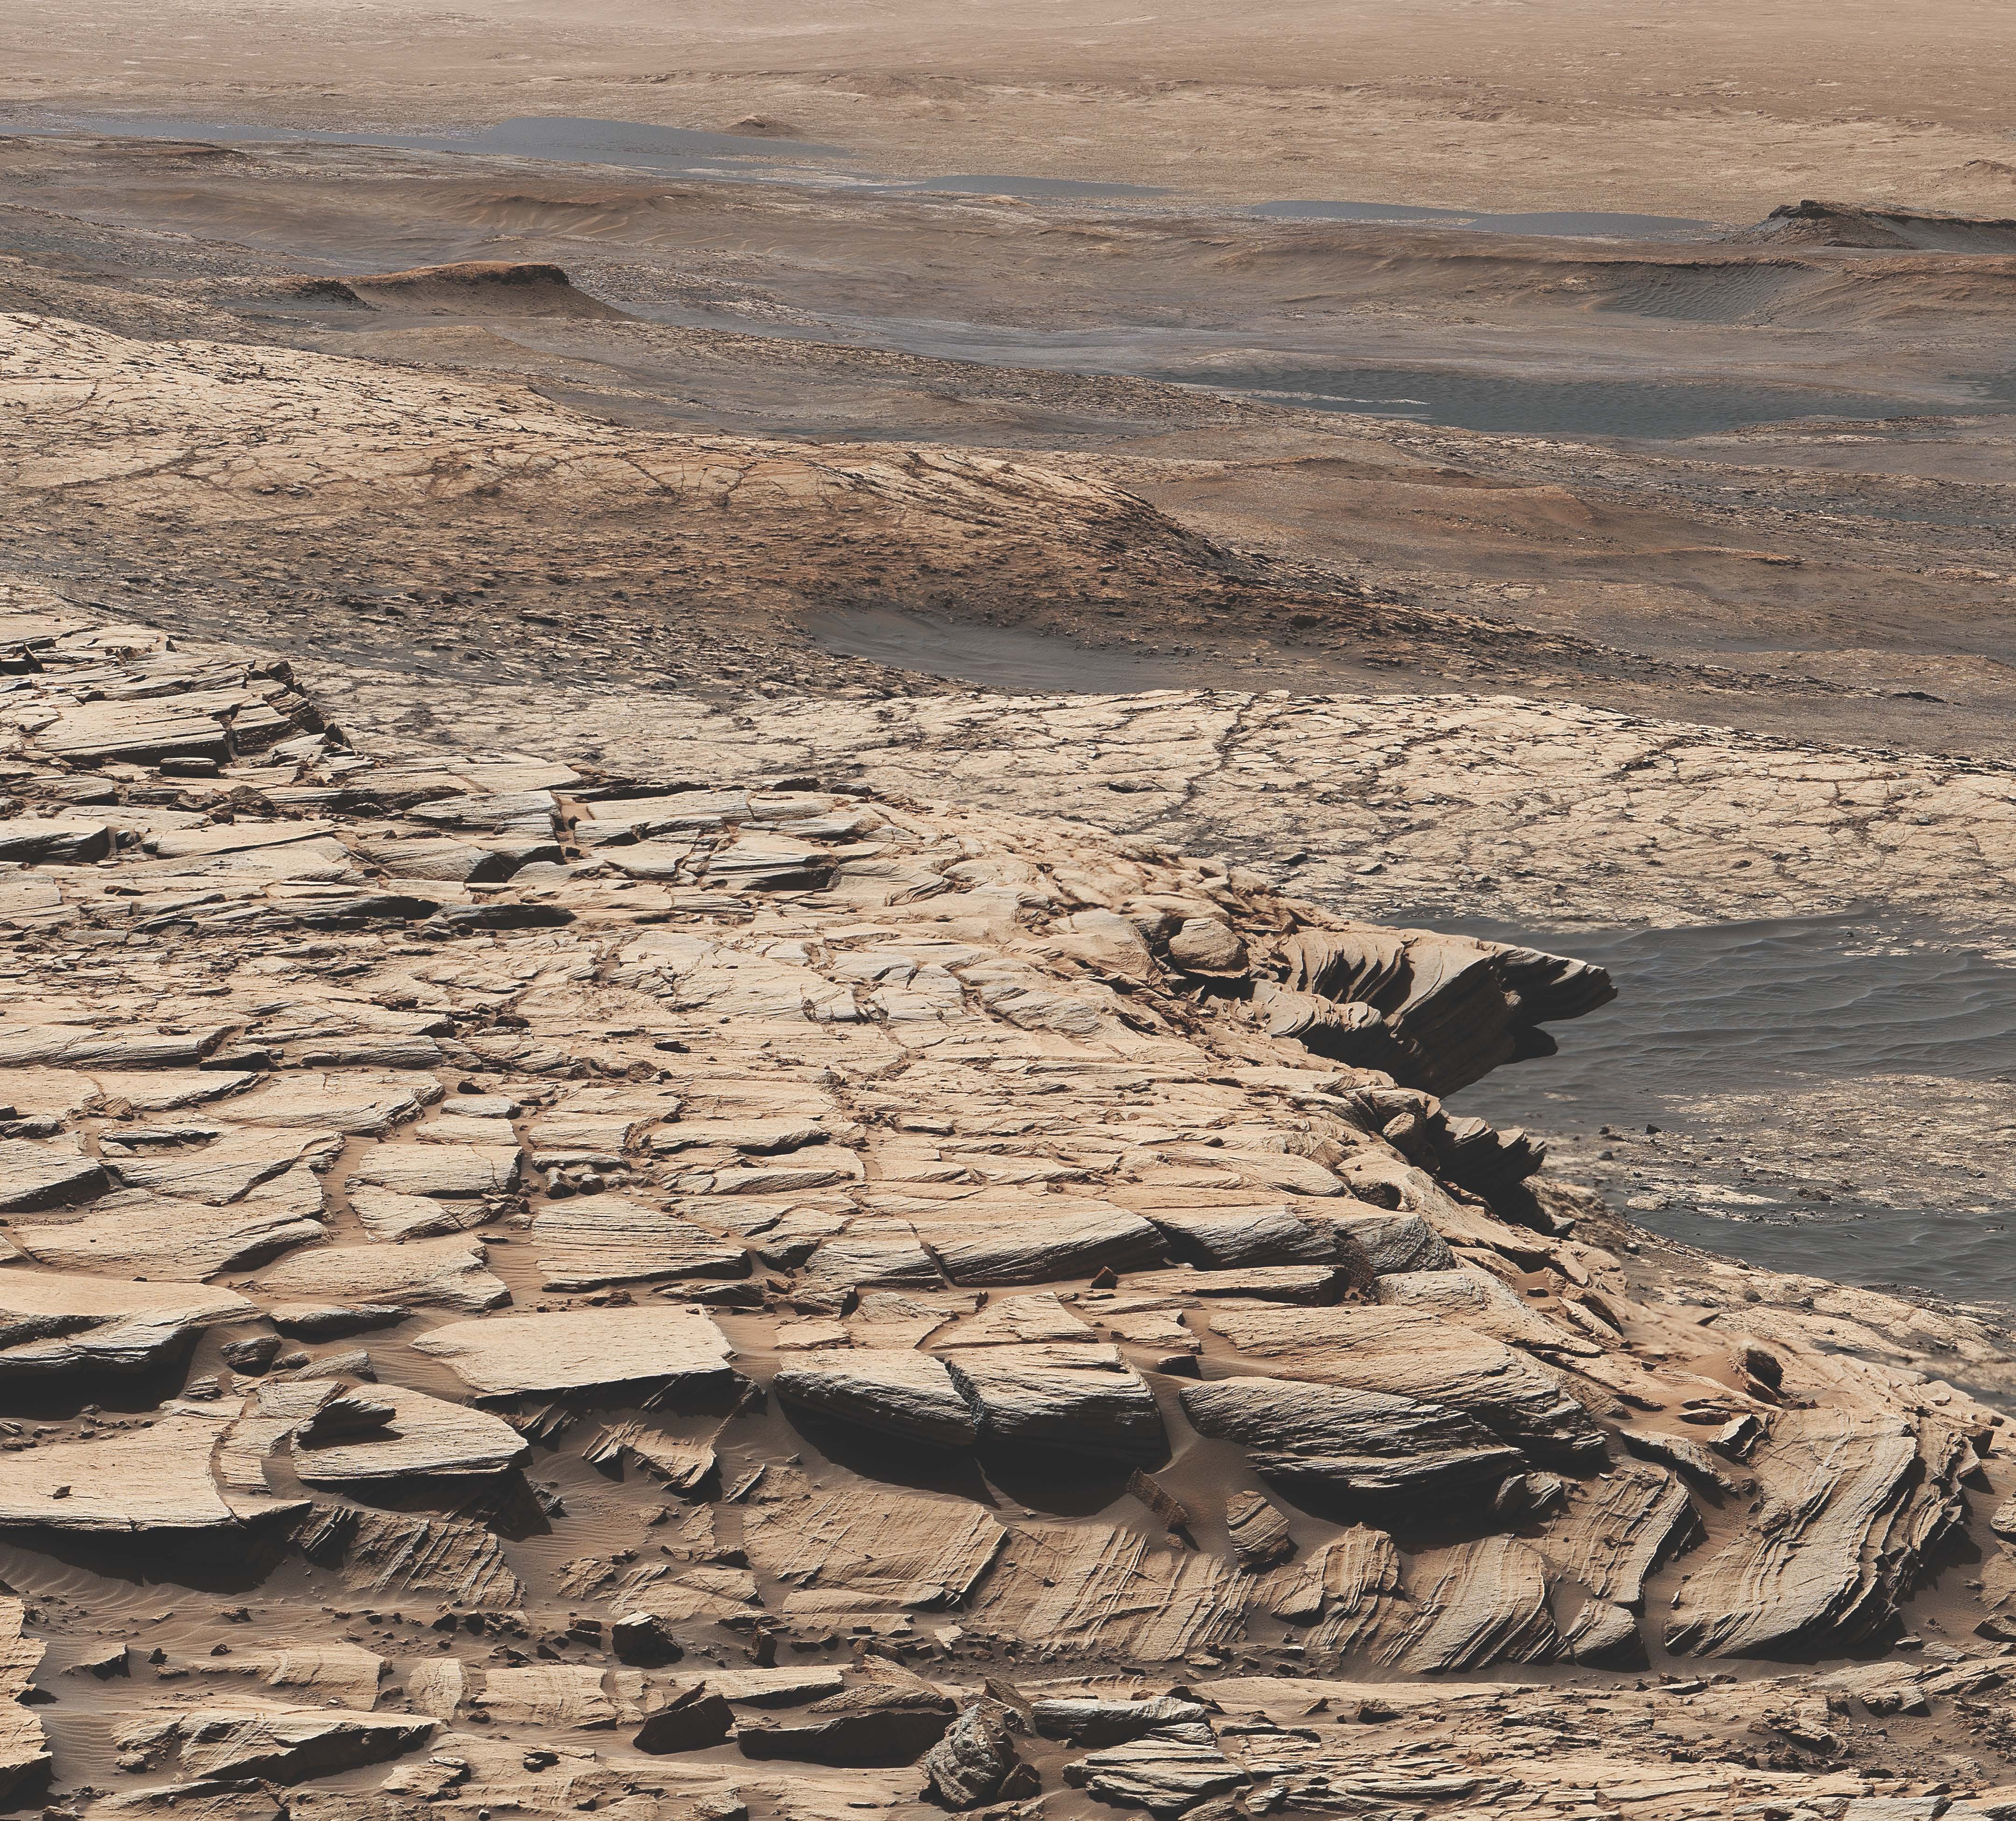 Ta mozaika została wykonana ze zdjęć wykonanych przez kamerę MAST na pokładzie statku kosmicznego NASA Curiosity w dniu Marsa 2729, czyli w pierwszym dniu misji.  Krajobraz przedstawia formację piaskowca Stimson w kraterze Gale.  W tym ogólnym miejscu Curiosity wywiercił otwór w Edynburgu, którego próbkę wzbogacono węglem 12.